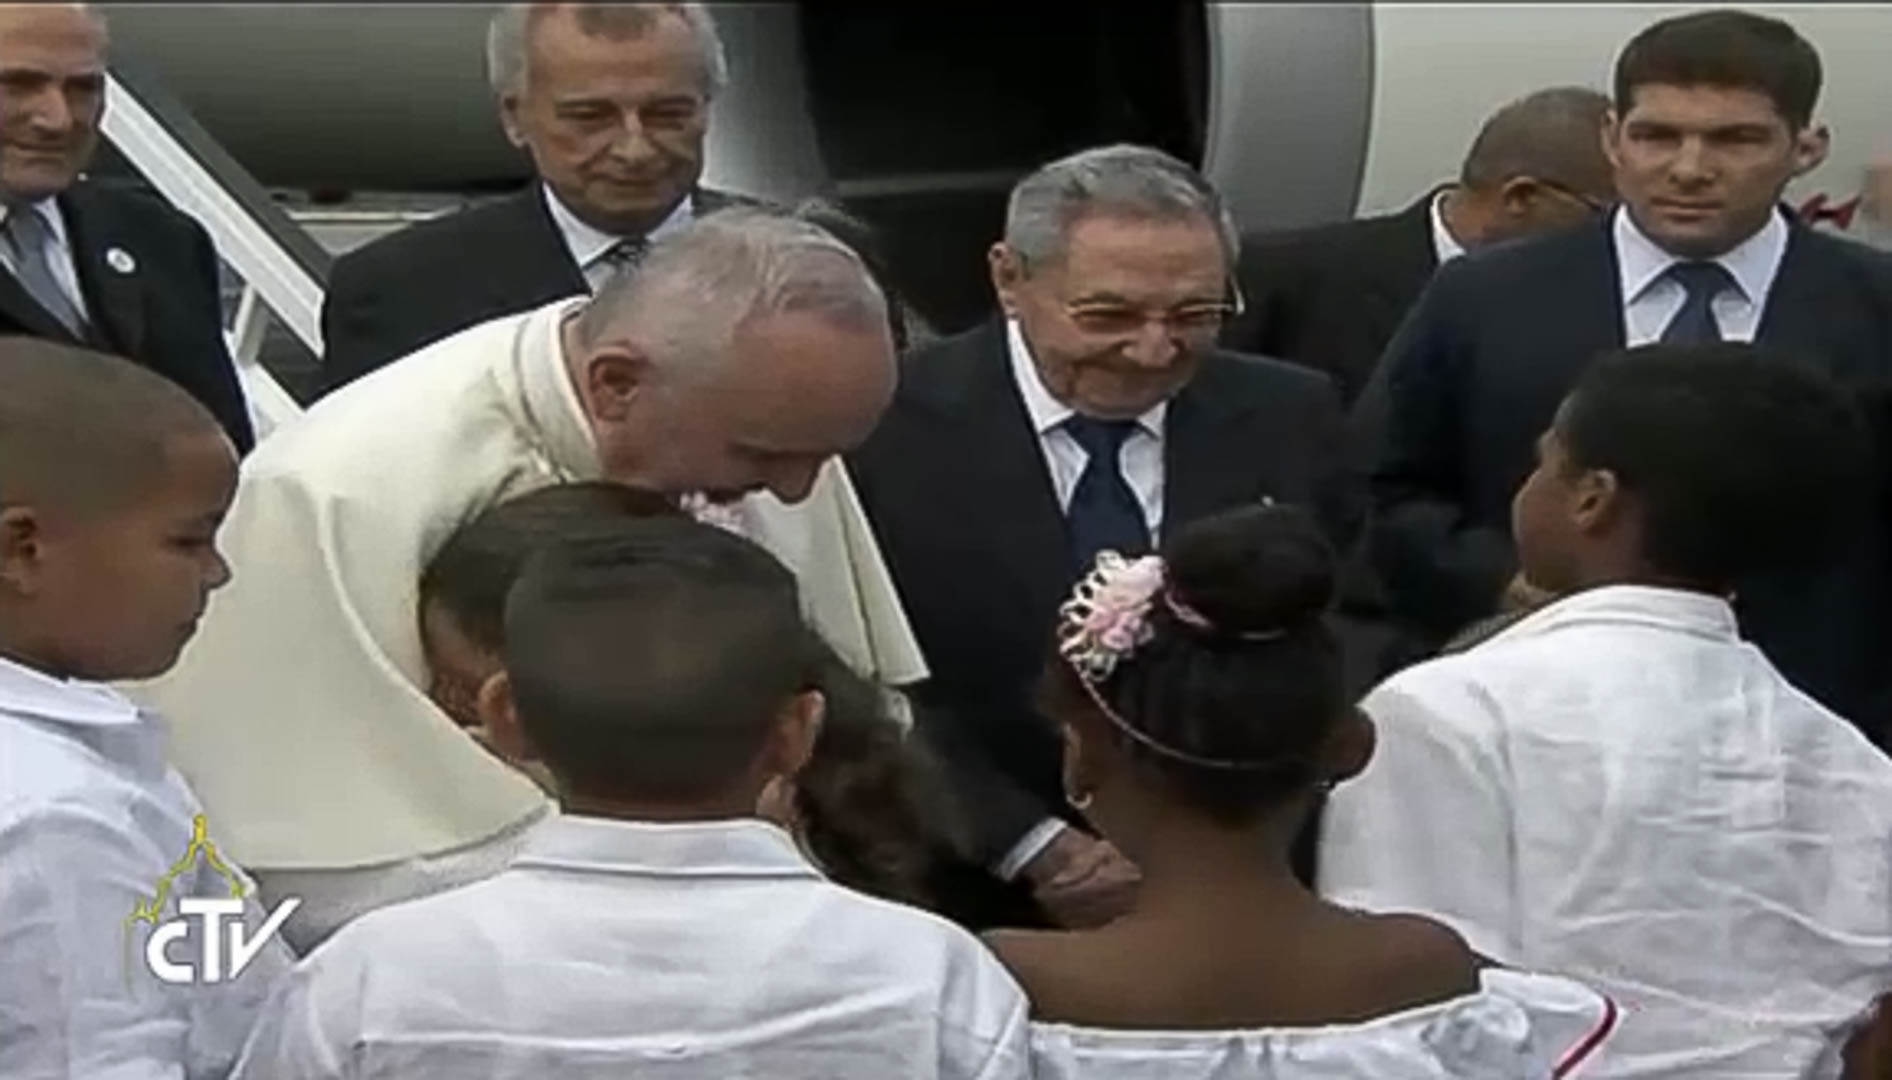 Le pape François reçu par des enfants à Cuba (photo CTV) 